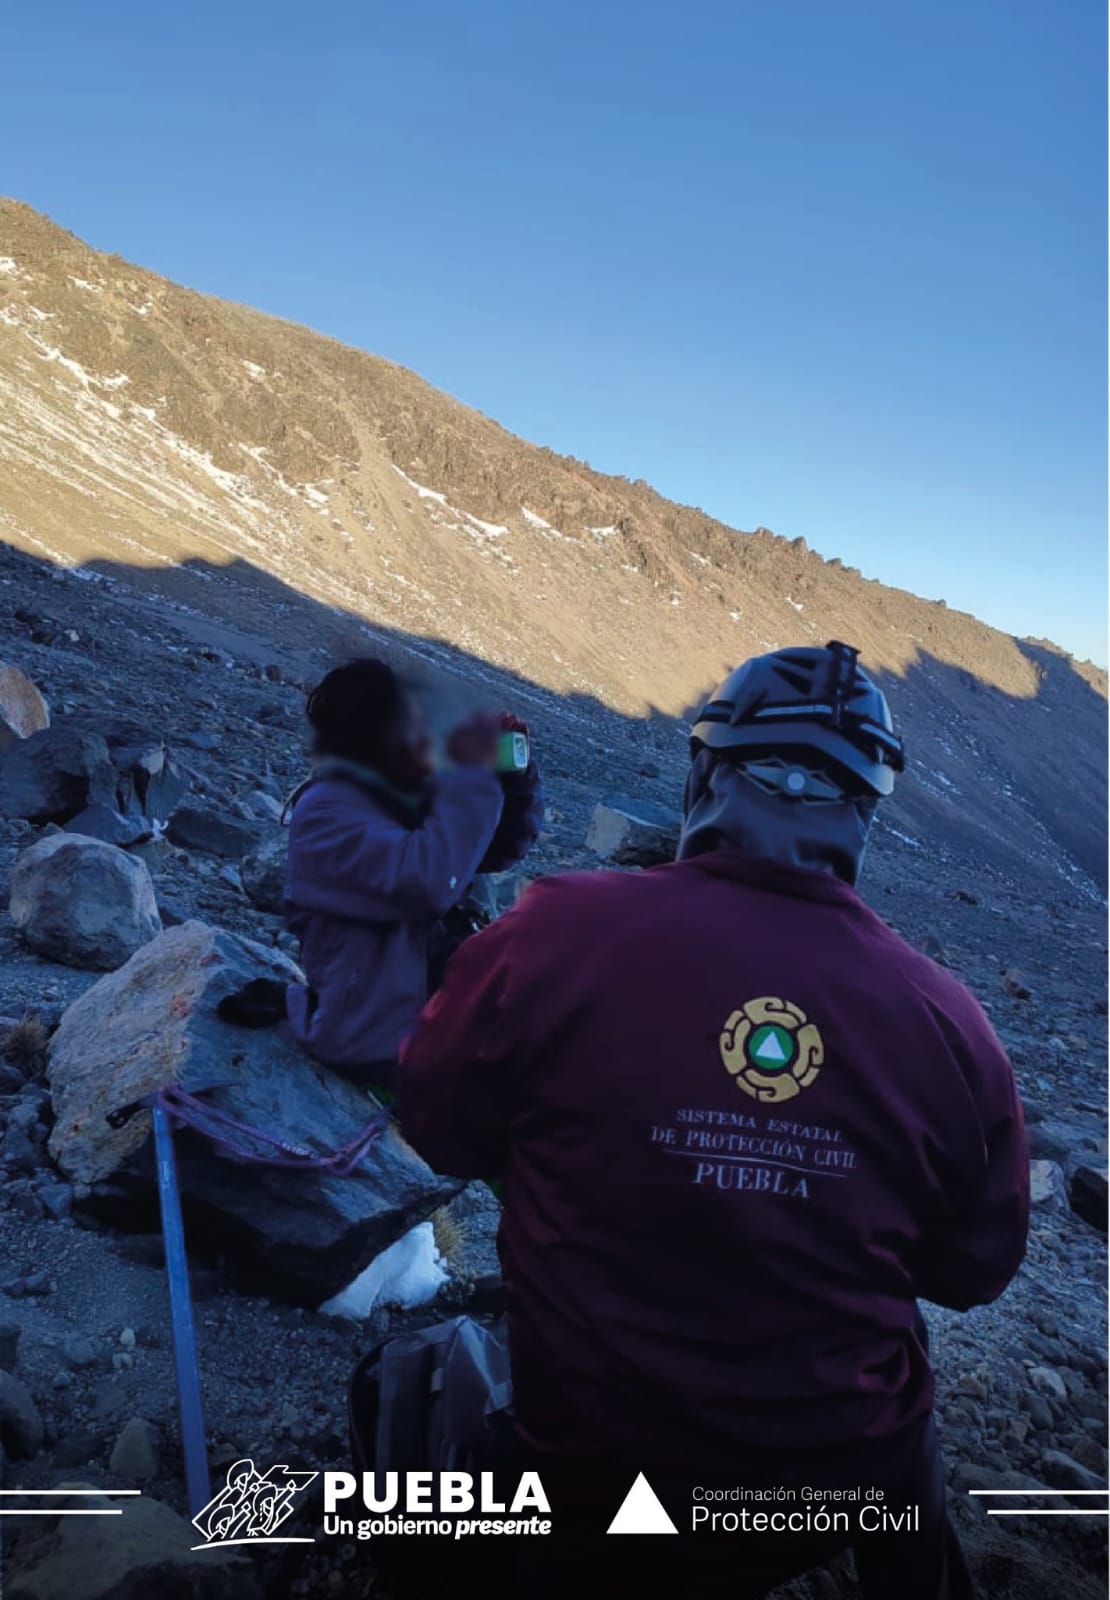 Protección Civil de Puebla informa que se encontró a tres de las personas extraviadas en el Pico de Orizaba